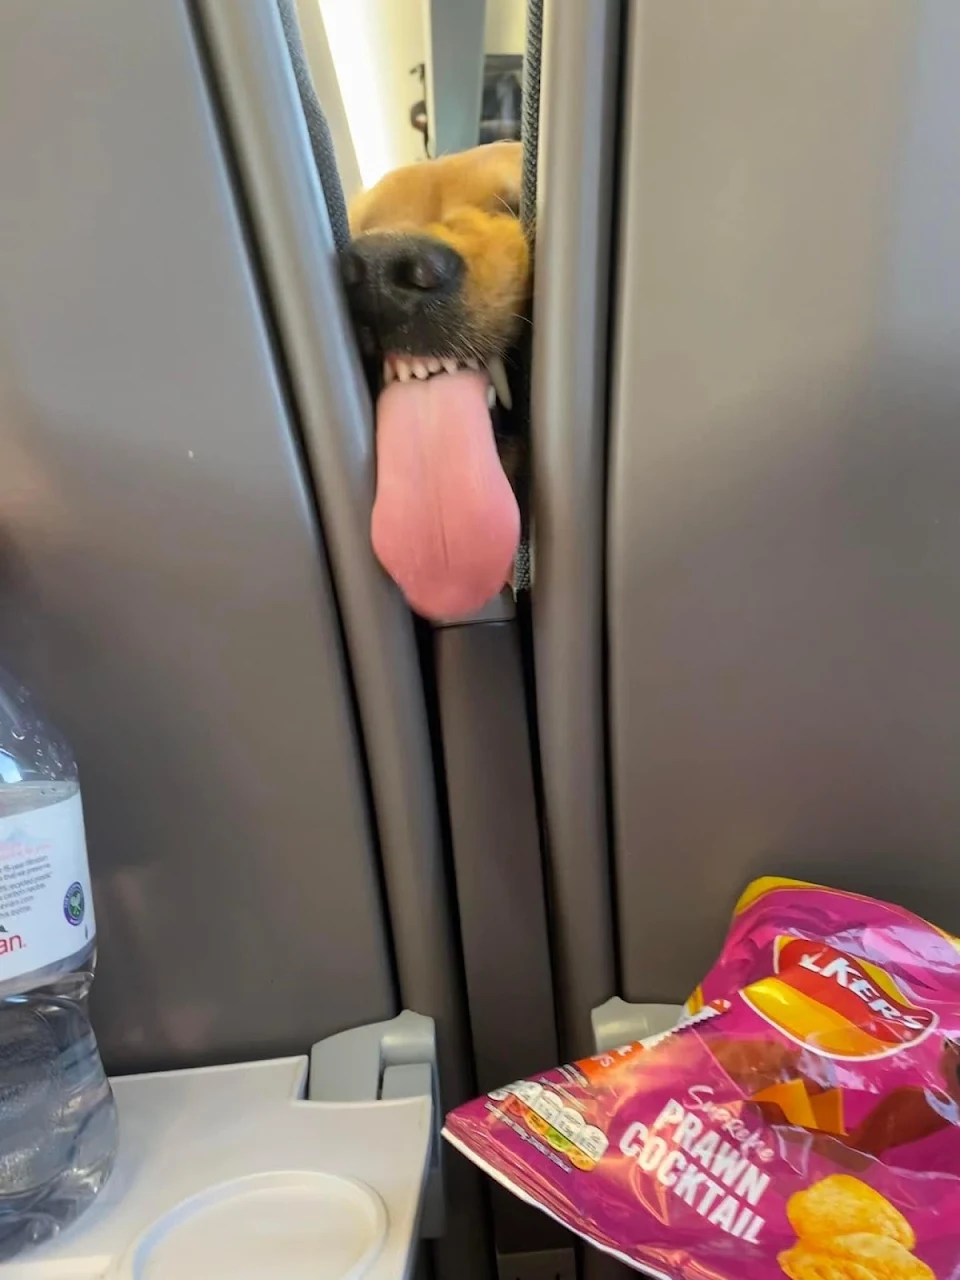 Hi, you got any snacks?